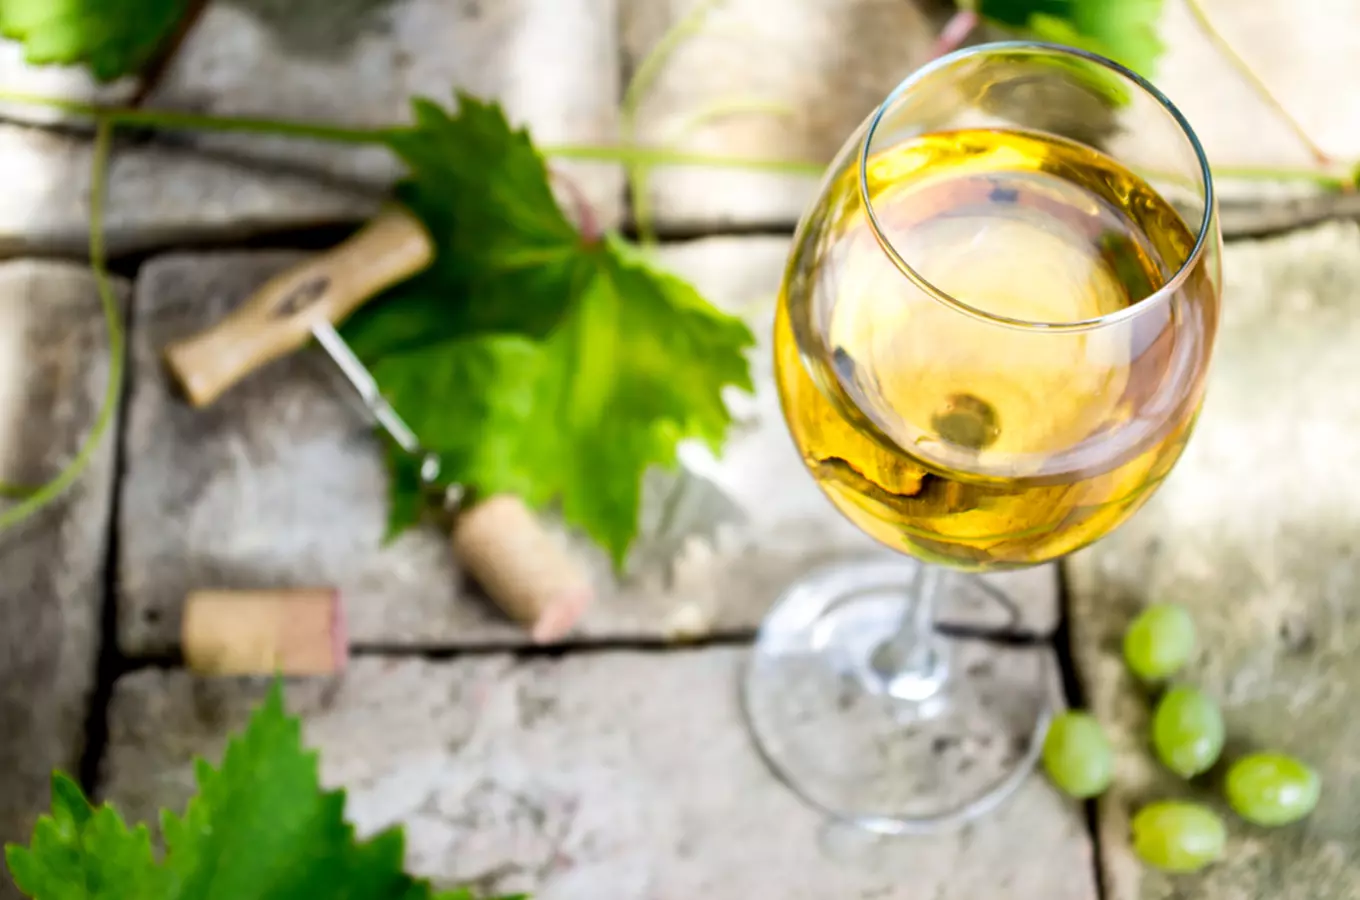 Nejlepším vínem České republiky 2021 je Pinot blanc z vinařství Thaya z Hnanic u Znojma